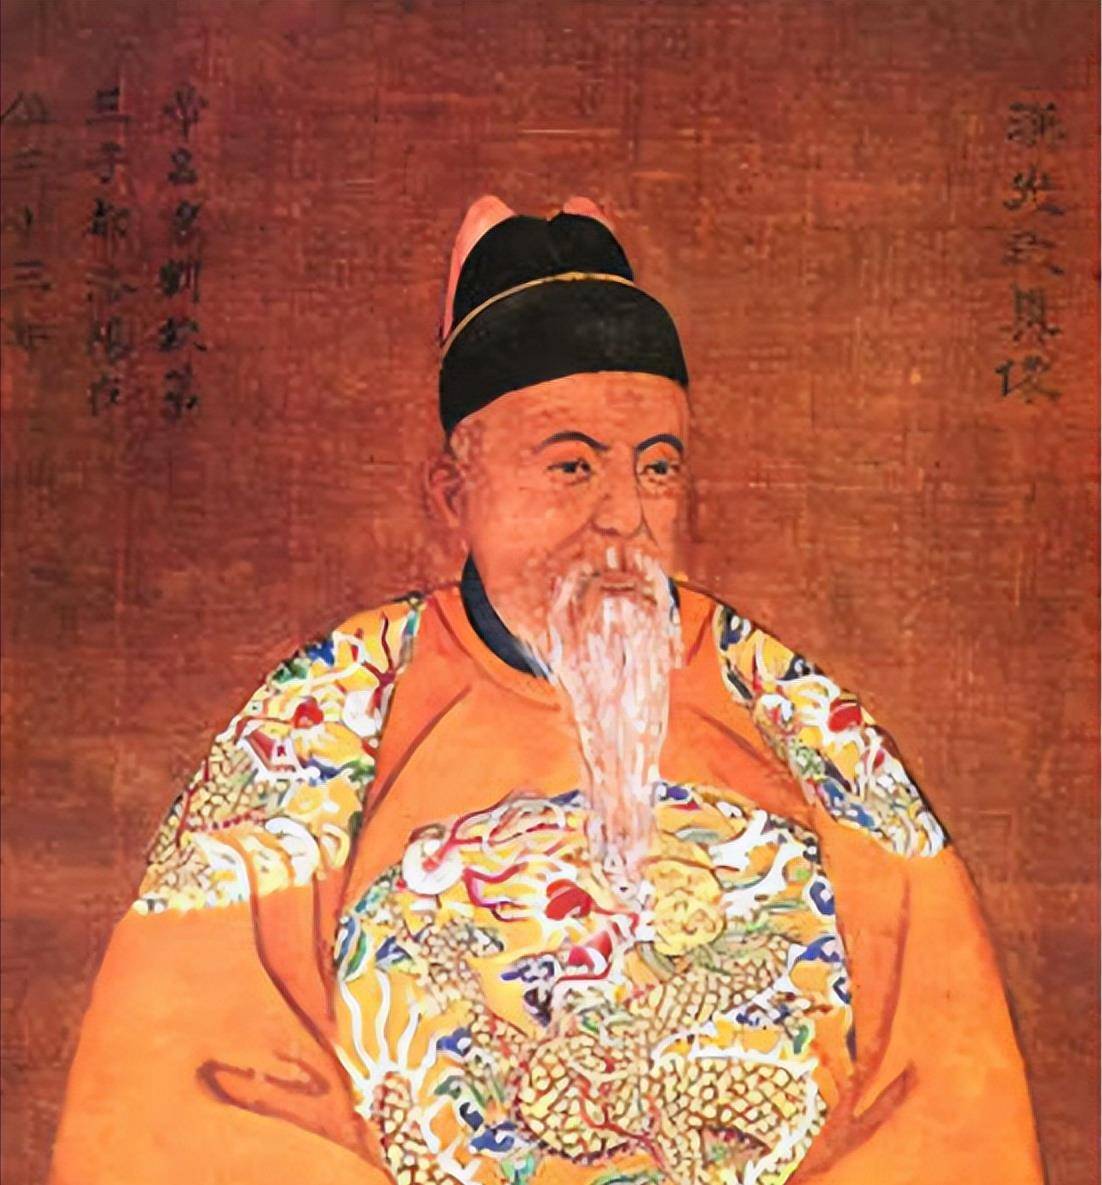 刘秀仅用三年就建立东汉,30岁成了皇帝,是运气好还是能力强?